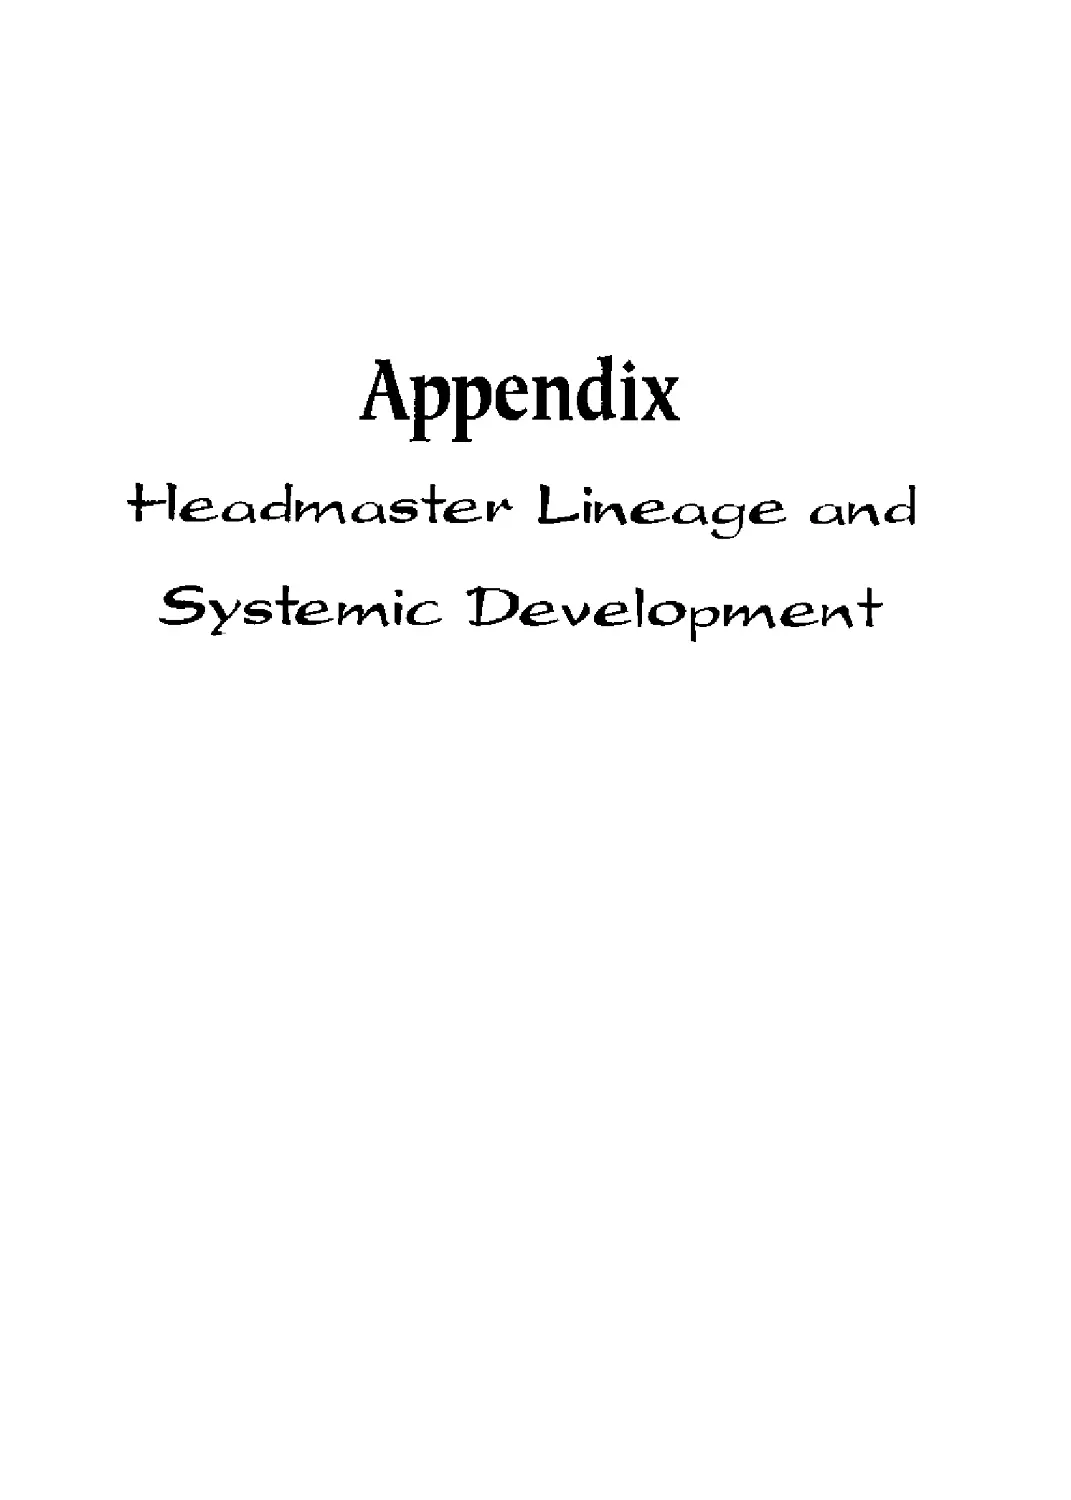 303 - Appendix